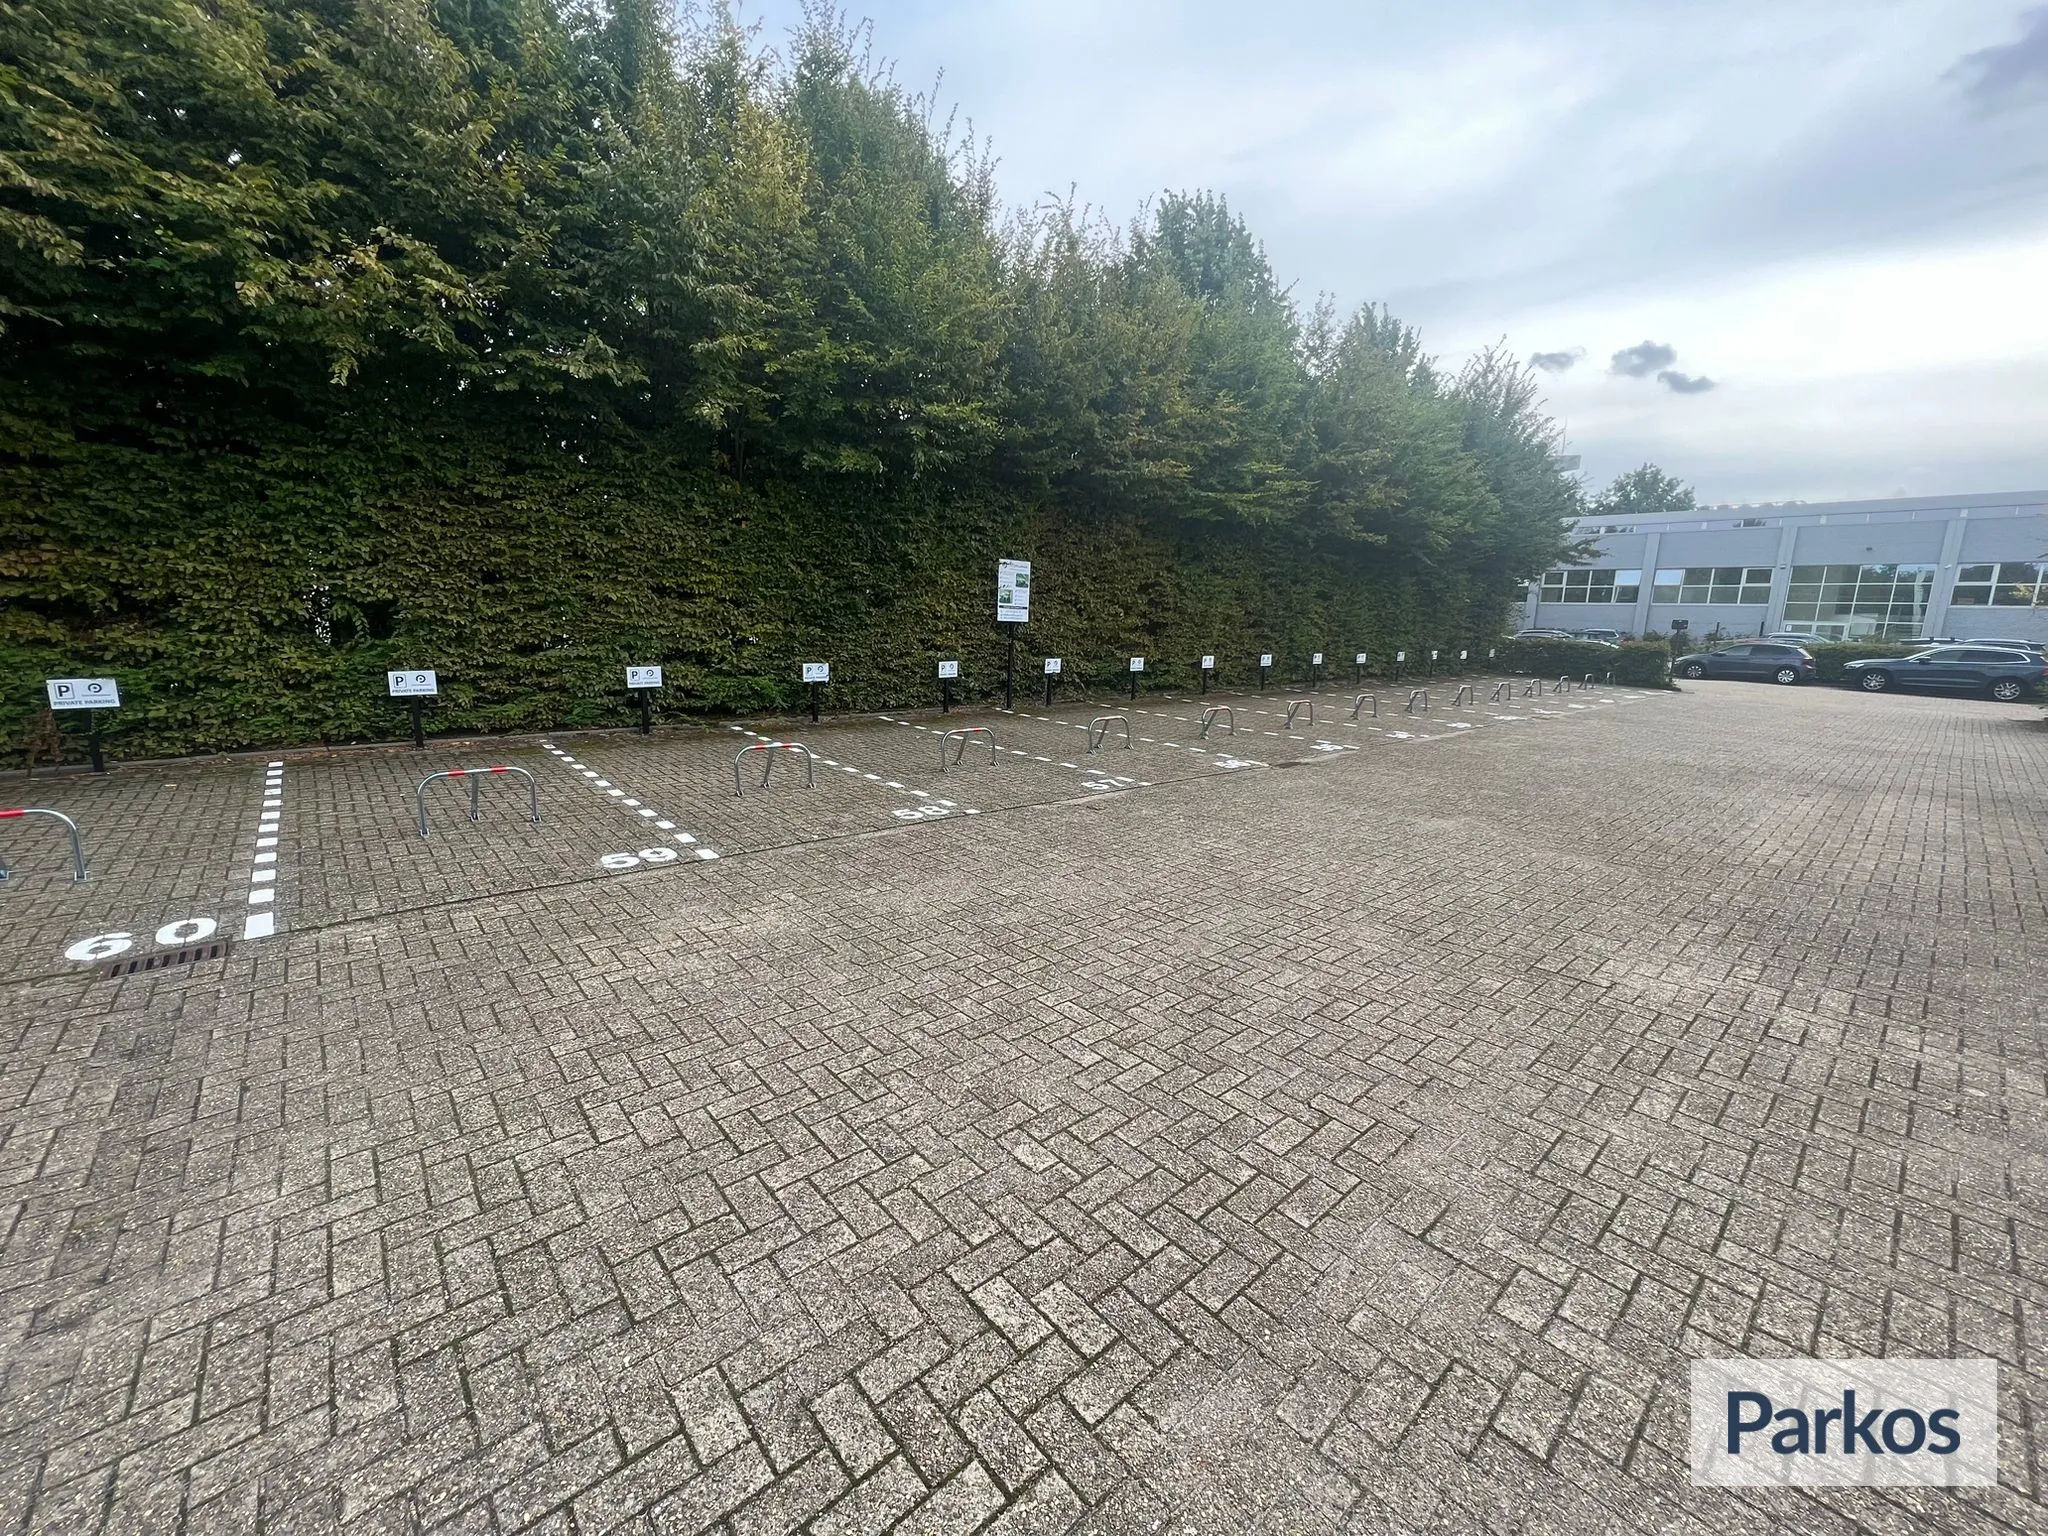 OM PARKING ZAVENTEM - Parking Zaventem - picture 1